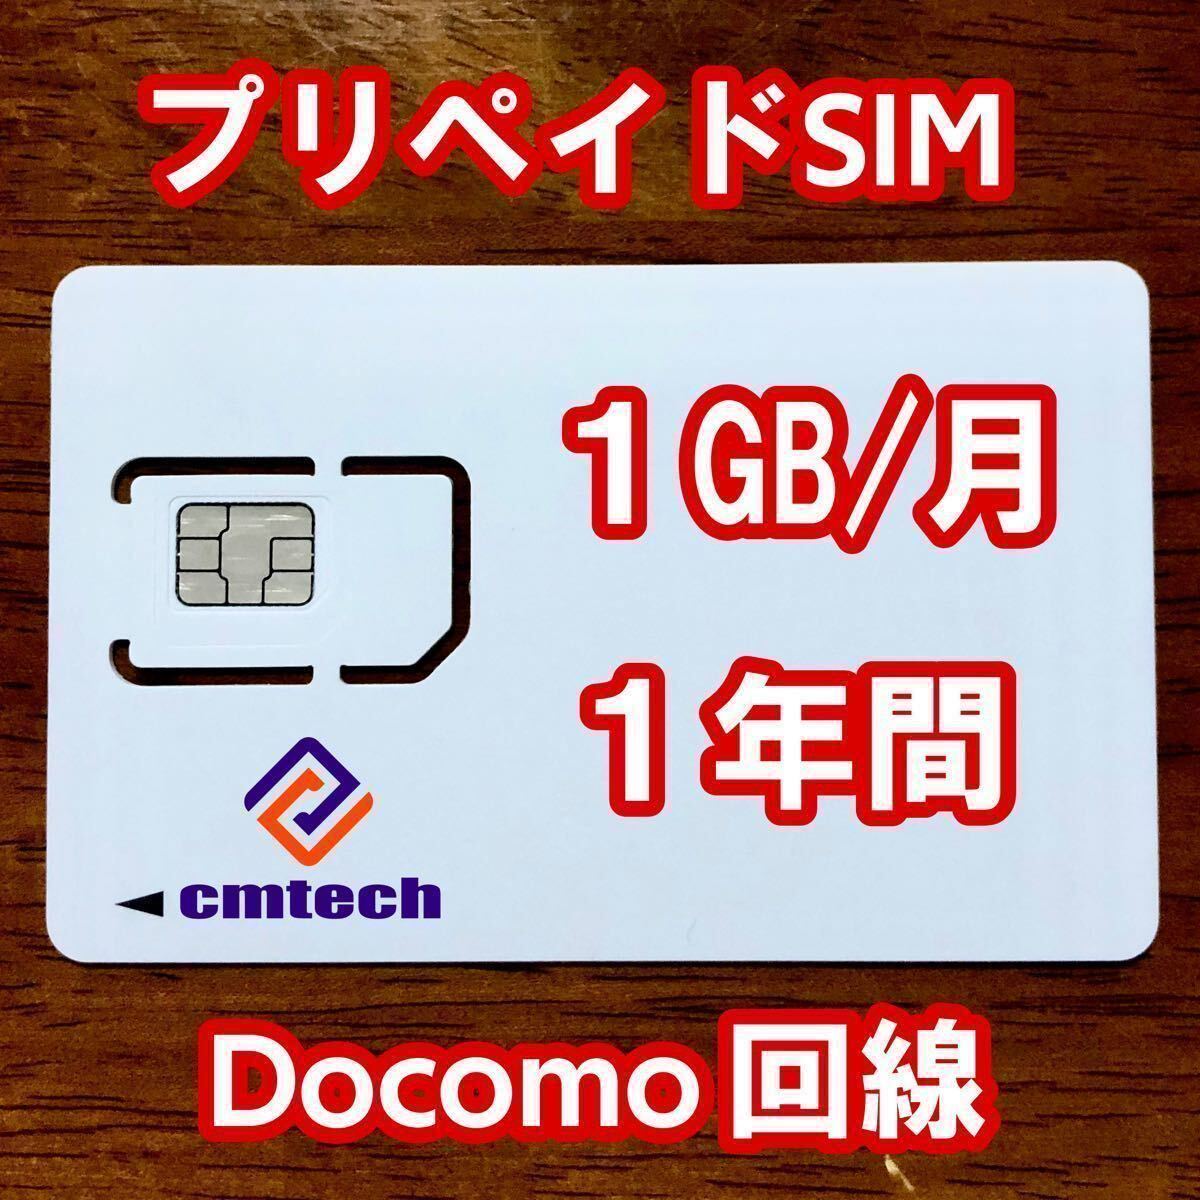 Docomo回線 プリペイドsim 1GB/月1年間有効 データ通信simカード11856の画像1